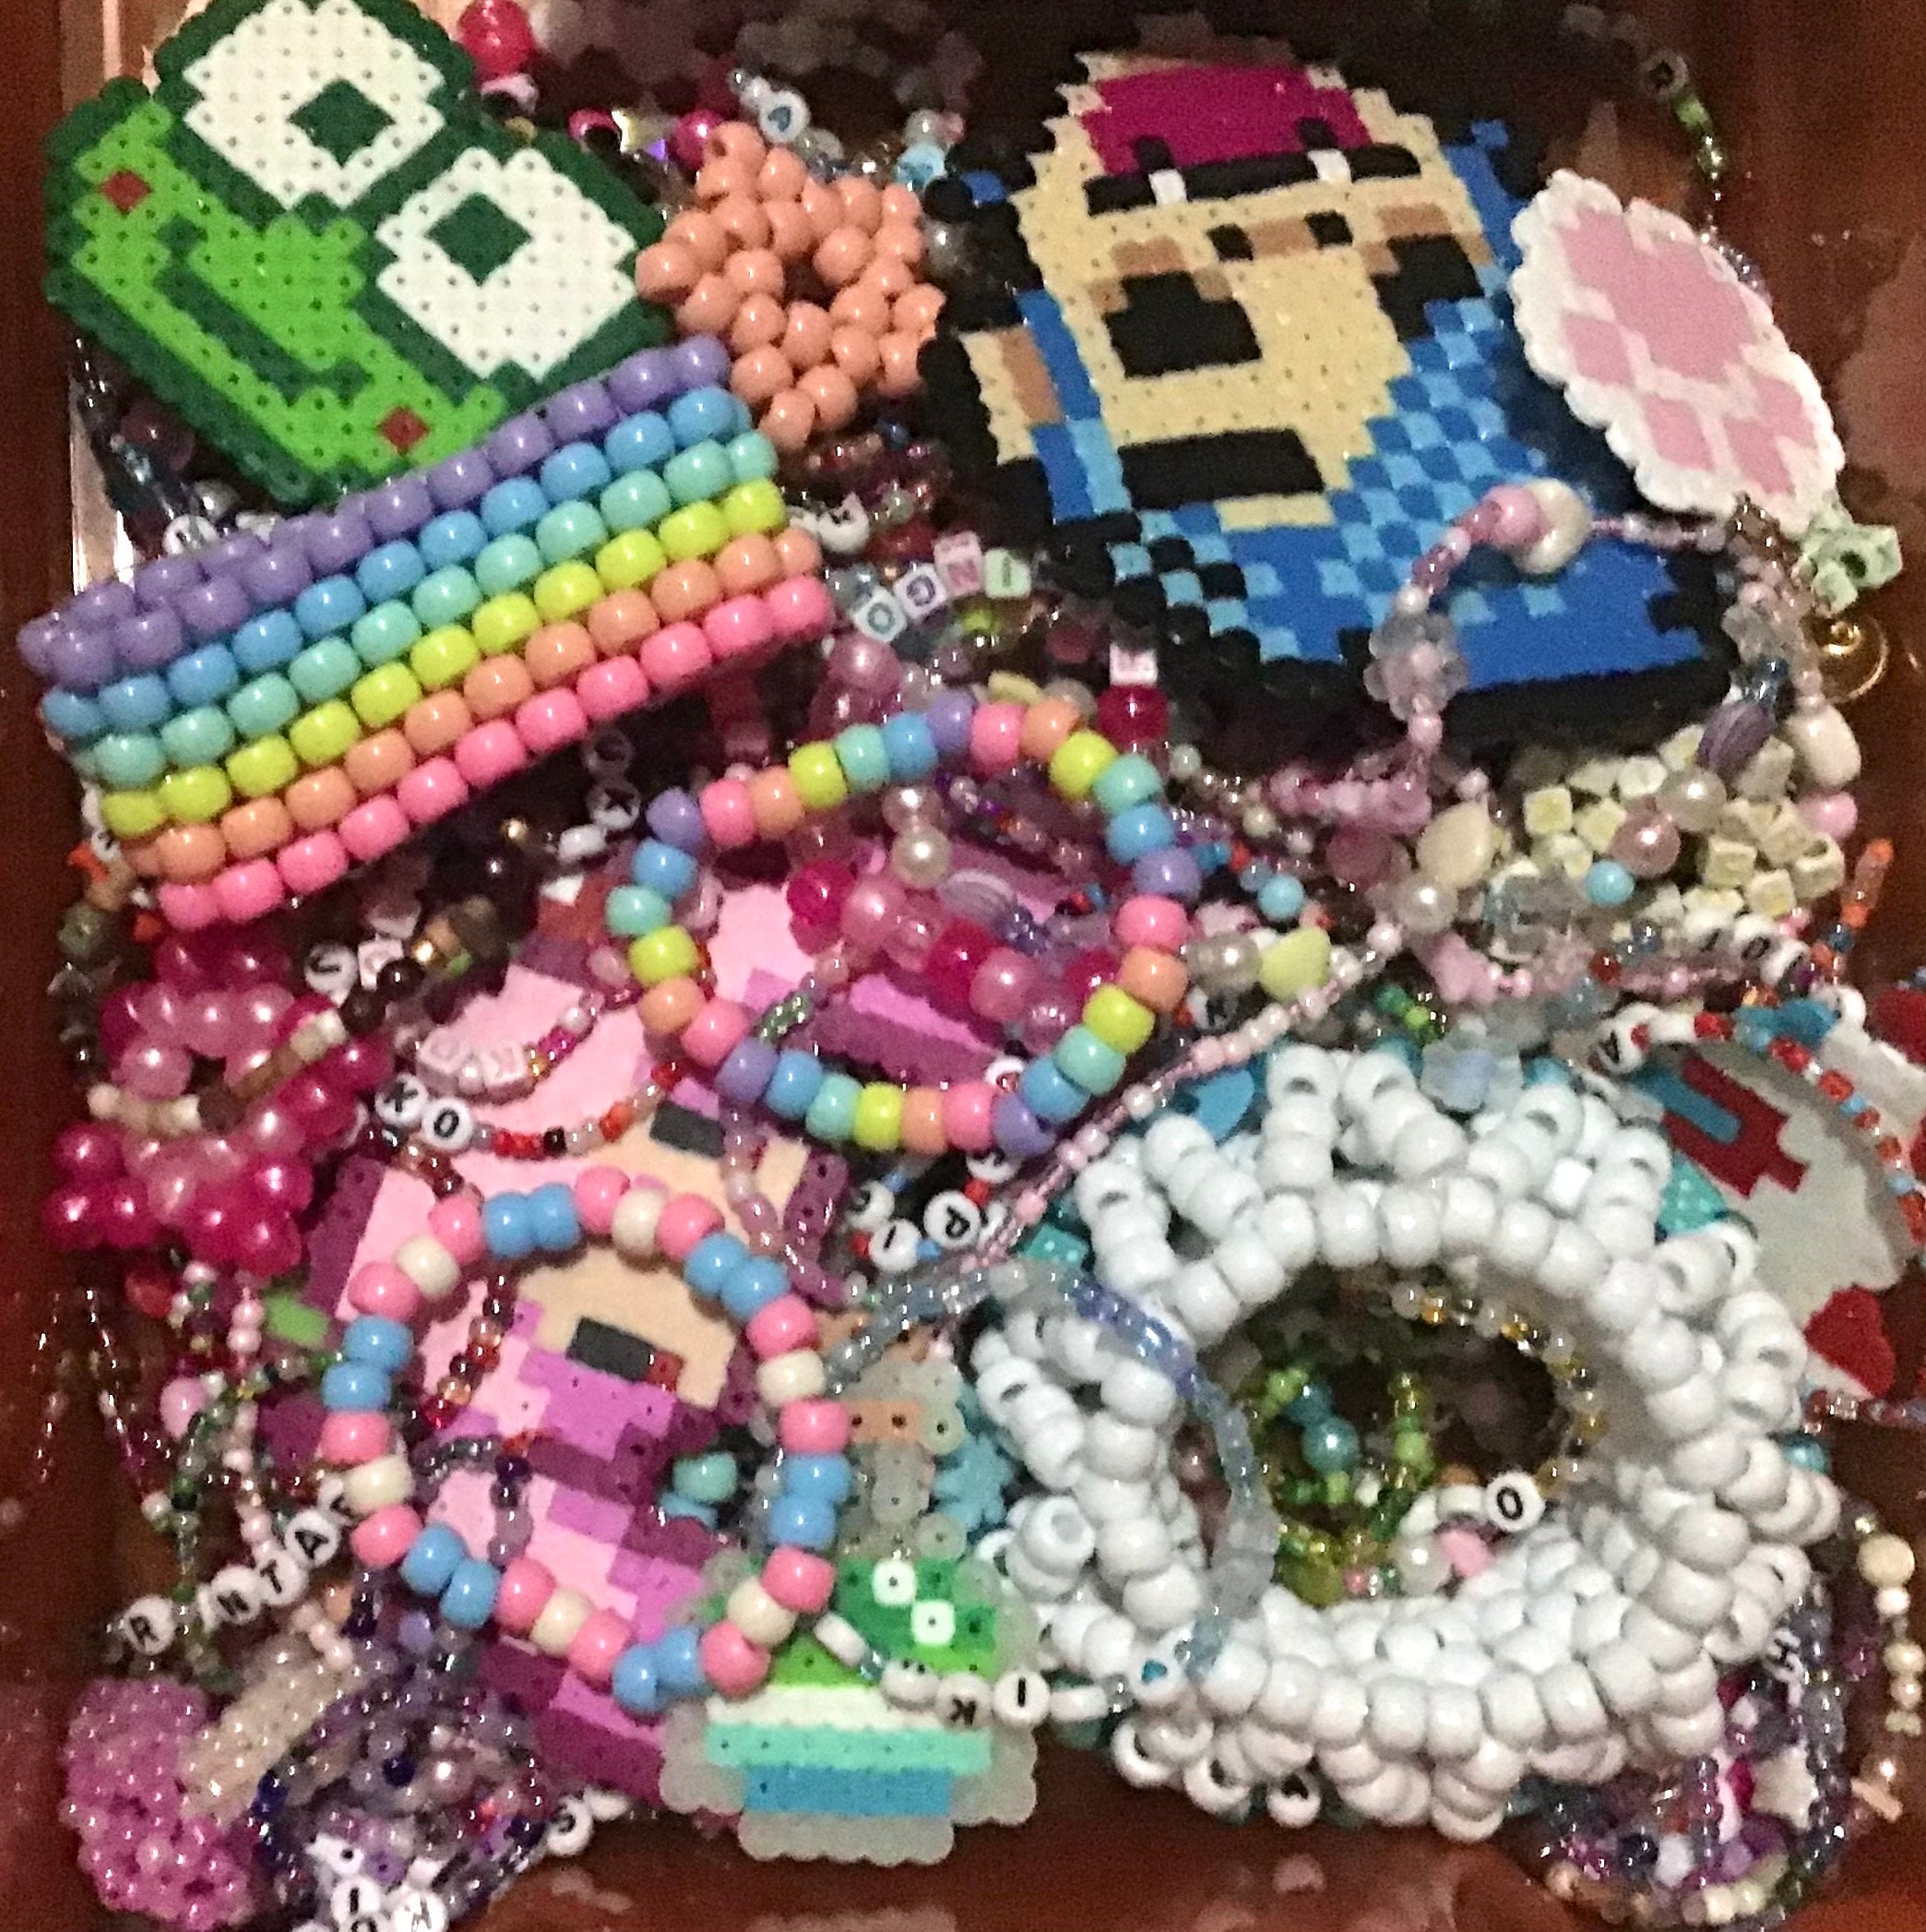 5mm For Perler/Hama Beads Kit Kids Fun DIY Craft 24/36 Colours Set Gift  Toys AU